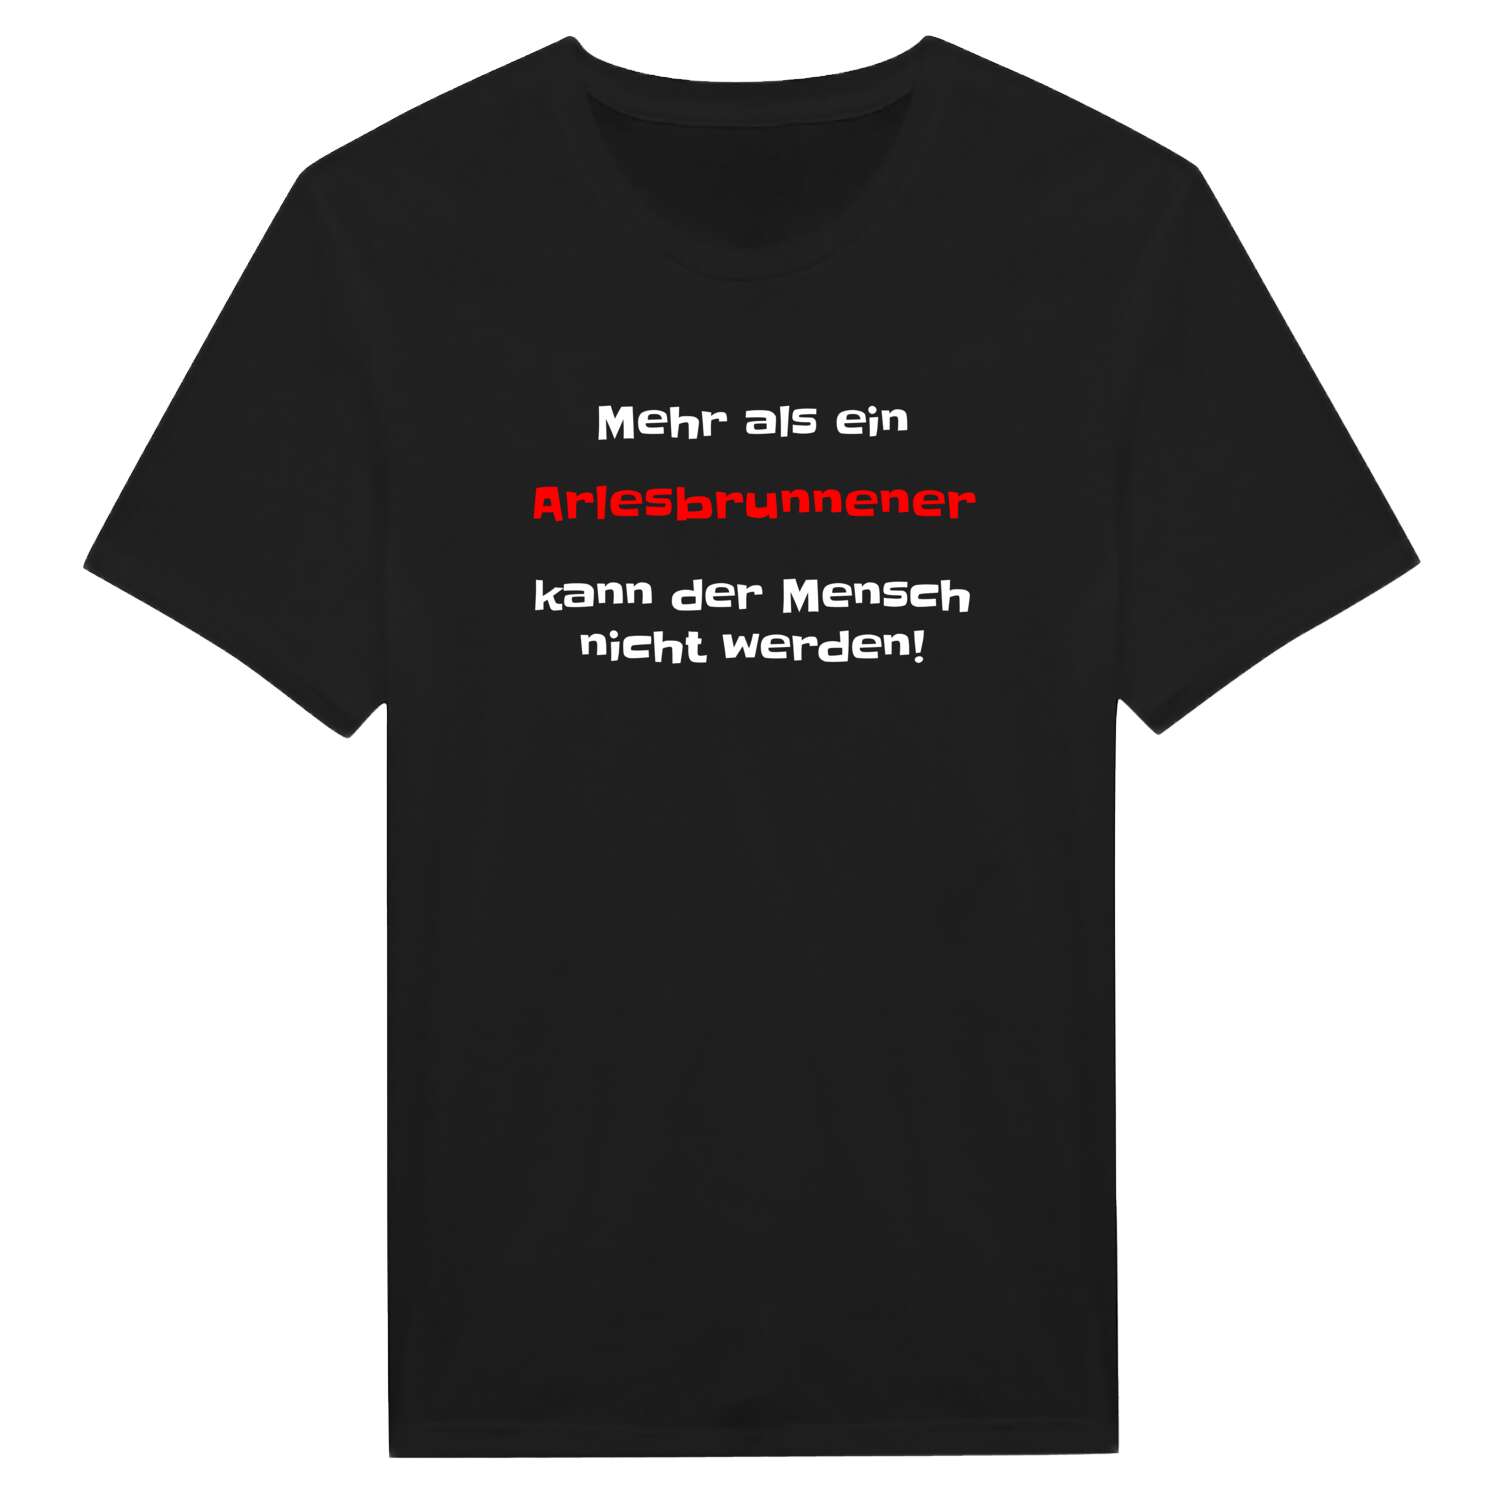 Arlesbrunnen T-Shirt »Mehr als ein«